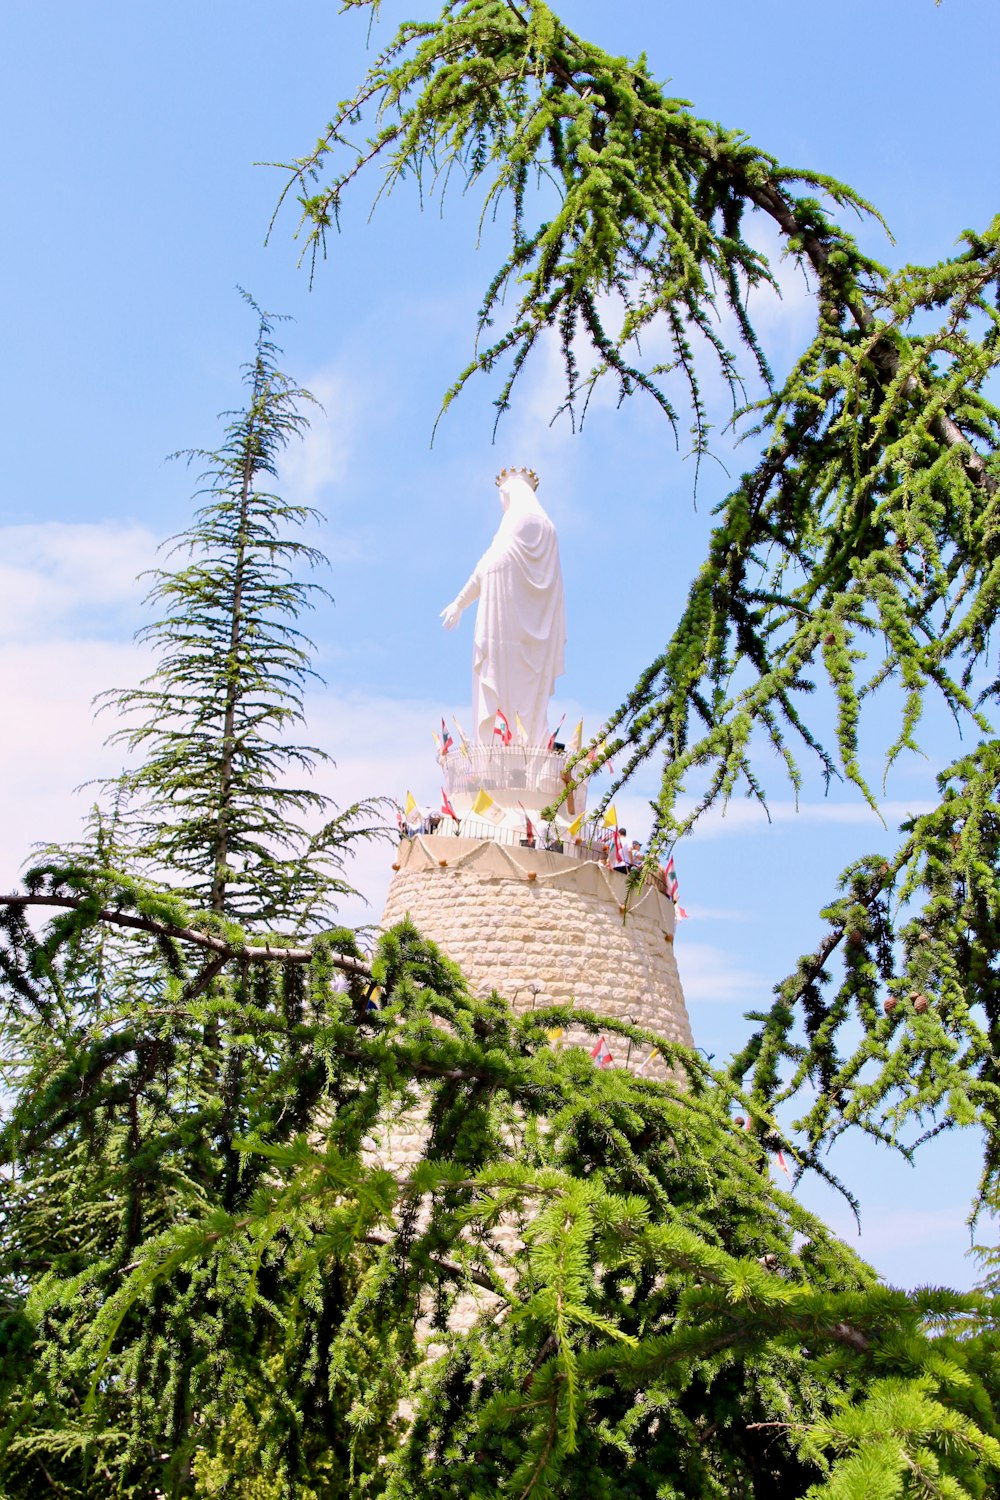 Statua bianca sulla torre di cemento marrone vicino agli alberi verdi durante il giorno